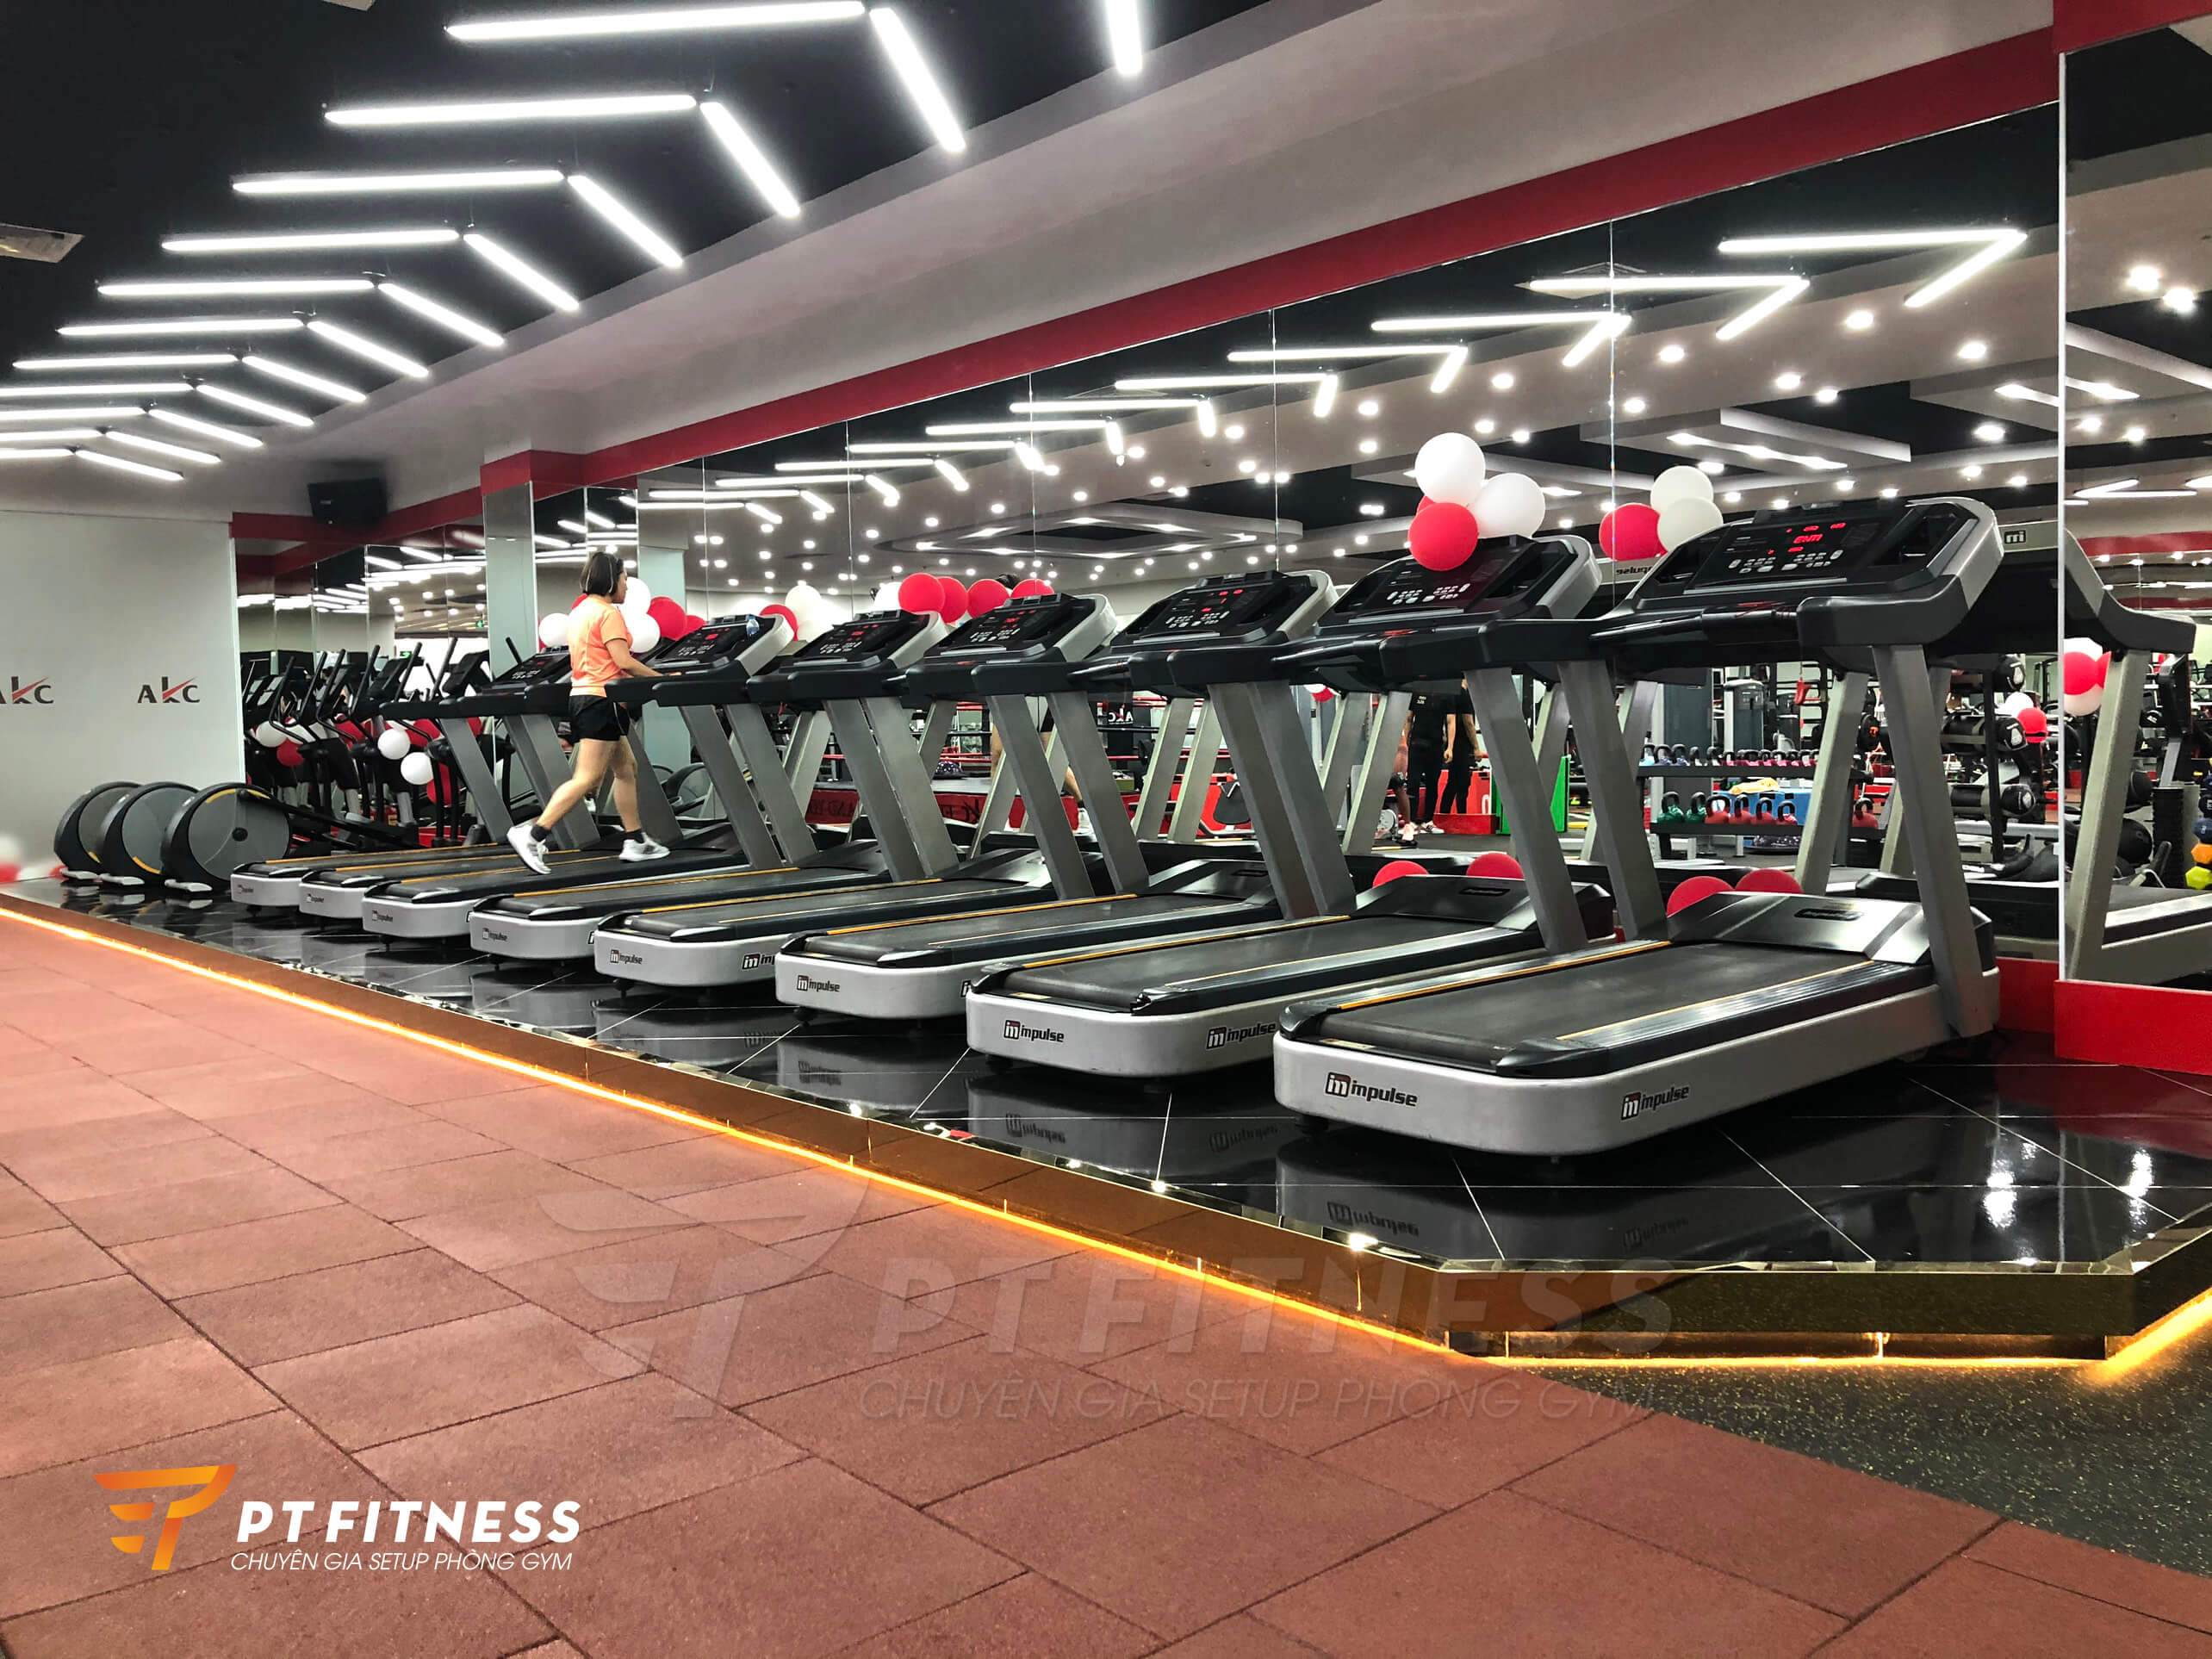 Dàn máy Cardio, máy chạy PT300H và máy tập toàn thân tại phòng gym thương mại AKC Fitness Quảng Ninh